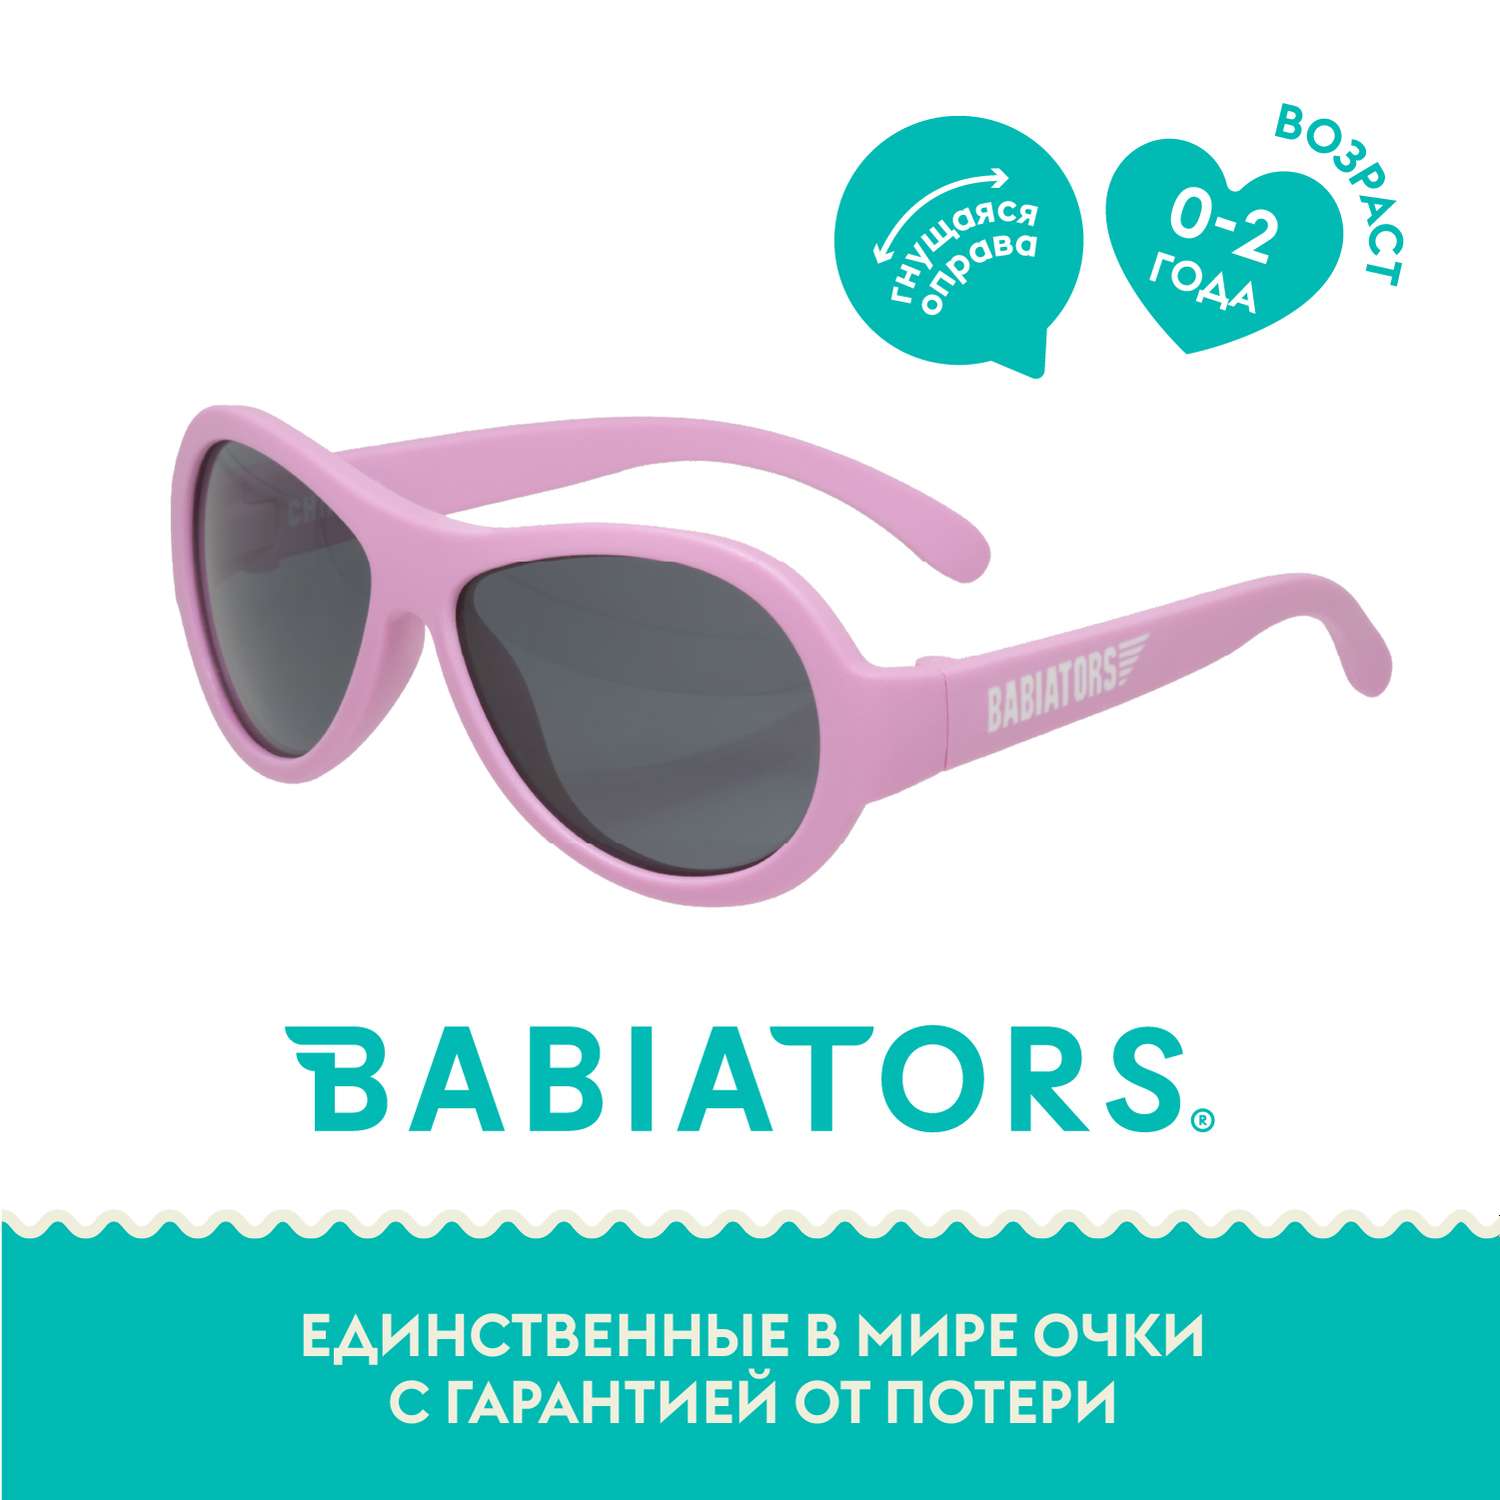 Солнцезащитные очки Babiators Aviator Розовая принцесса 0-2 BAB-004 - фото 2